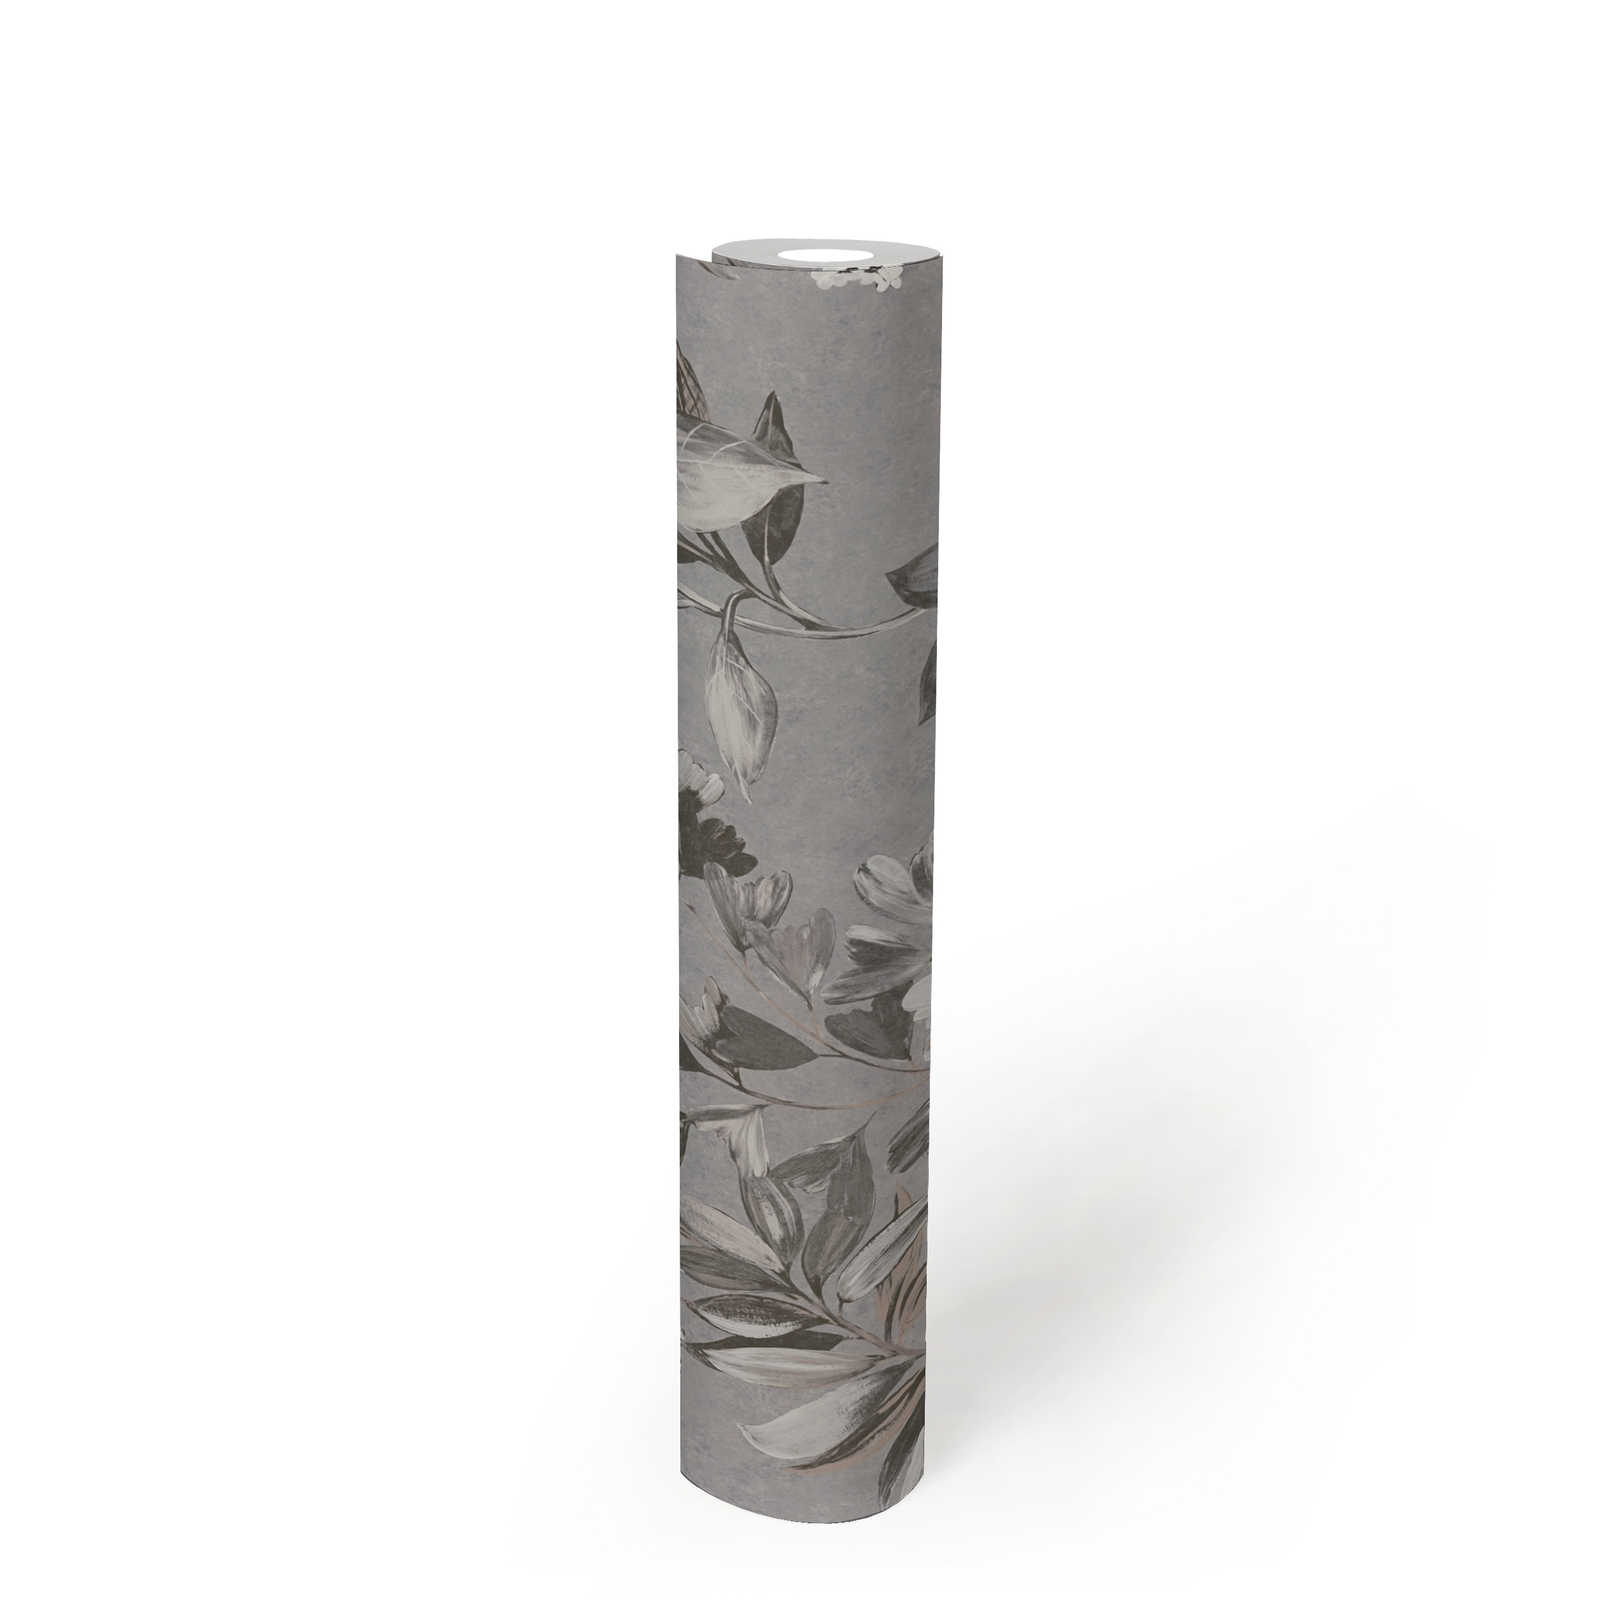             Papier peint intissé à motif floral - gris, blanc, noir
        